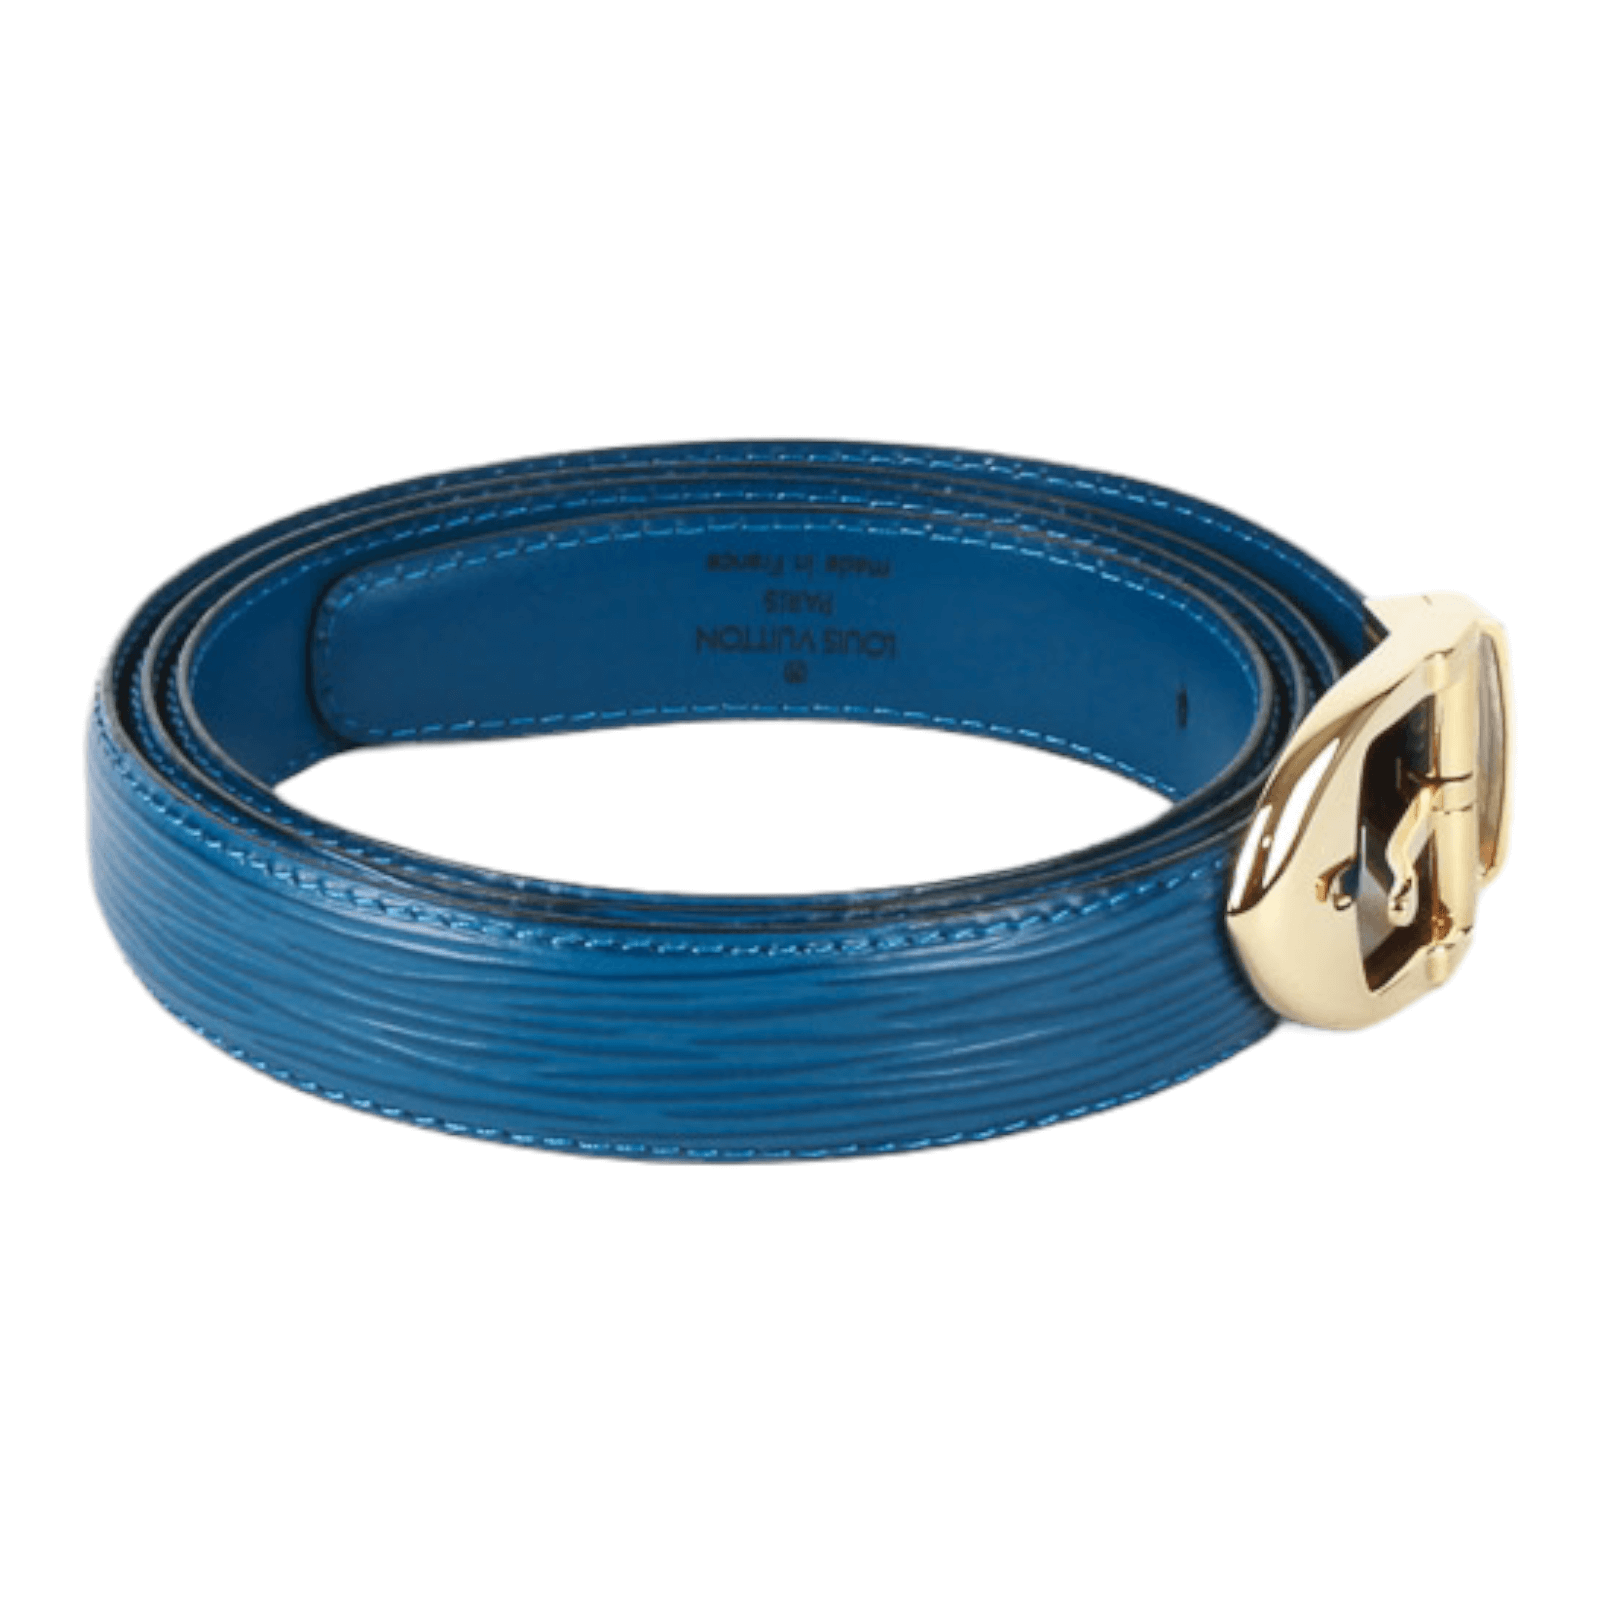 Authentic Louis Vuitton Vintage Blue Epi Belt Size 110 / 44